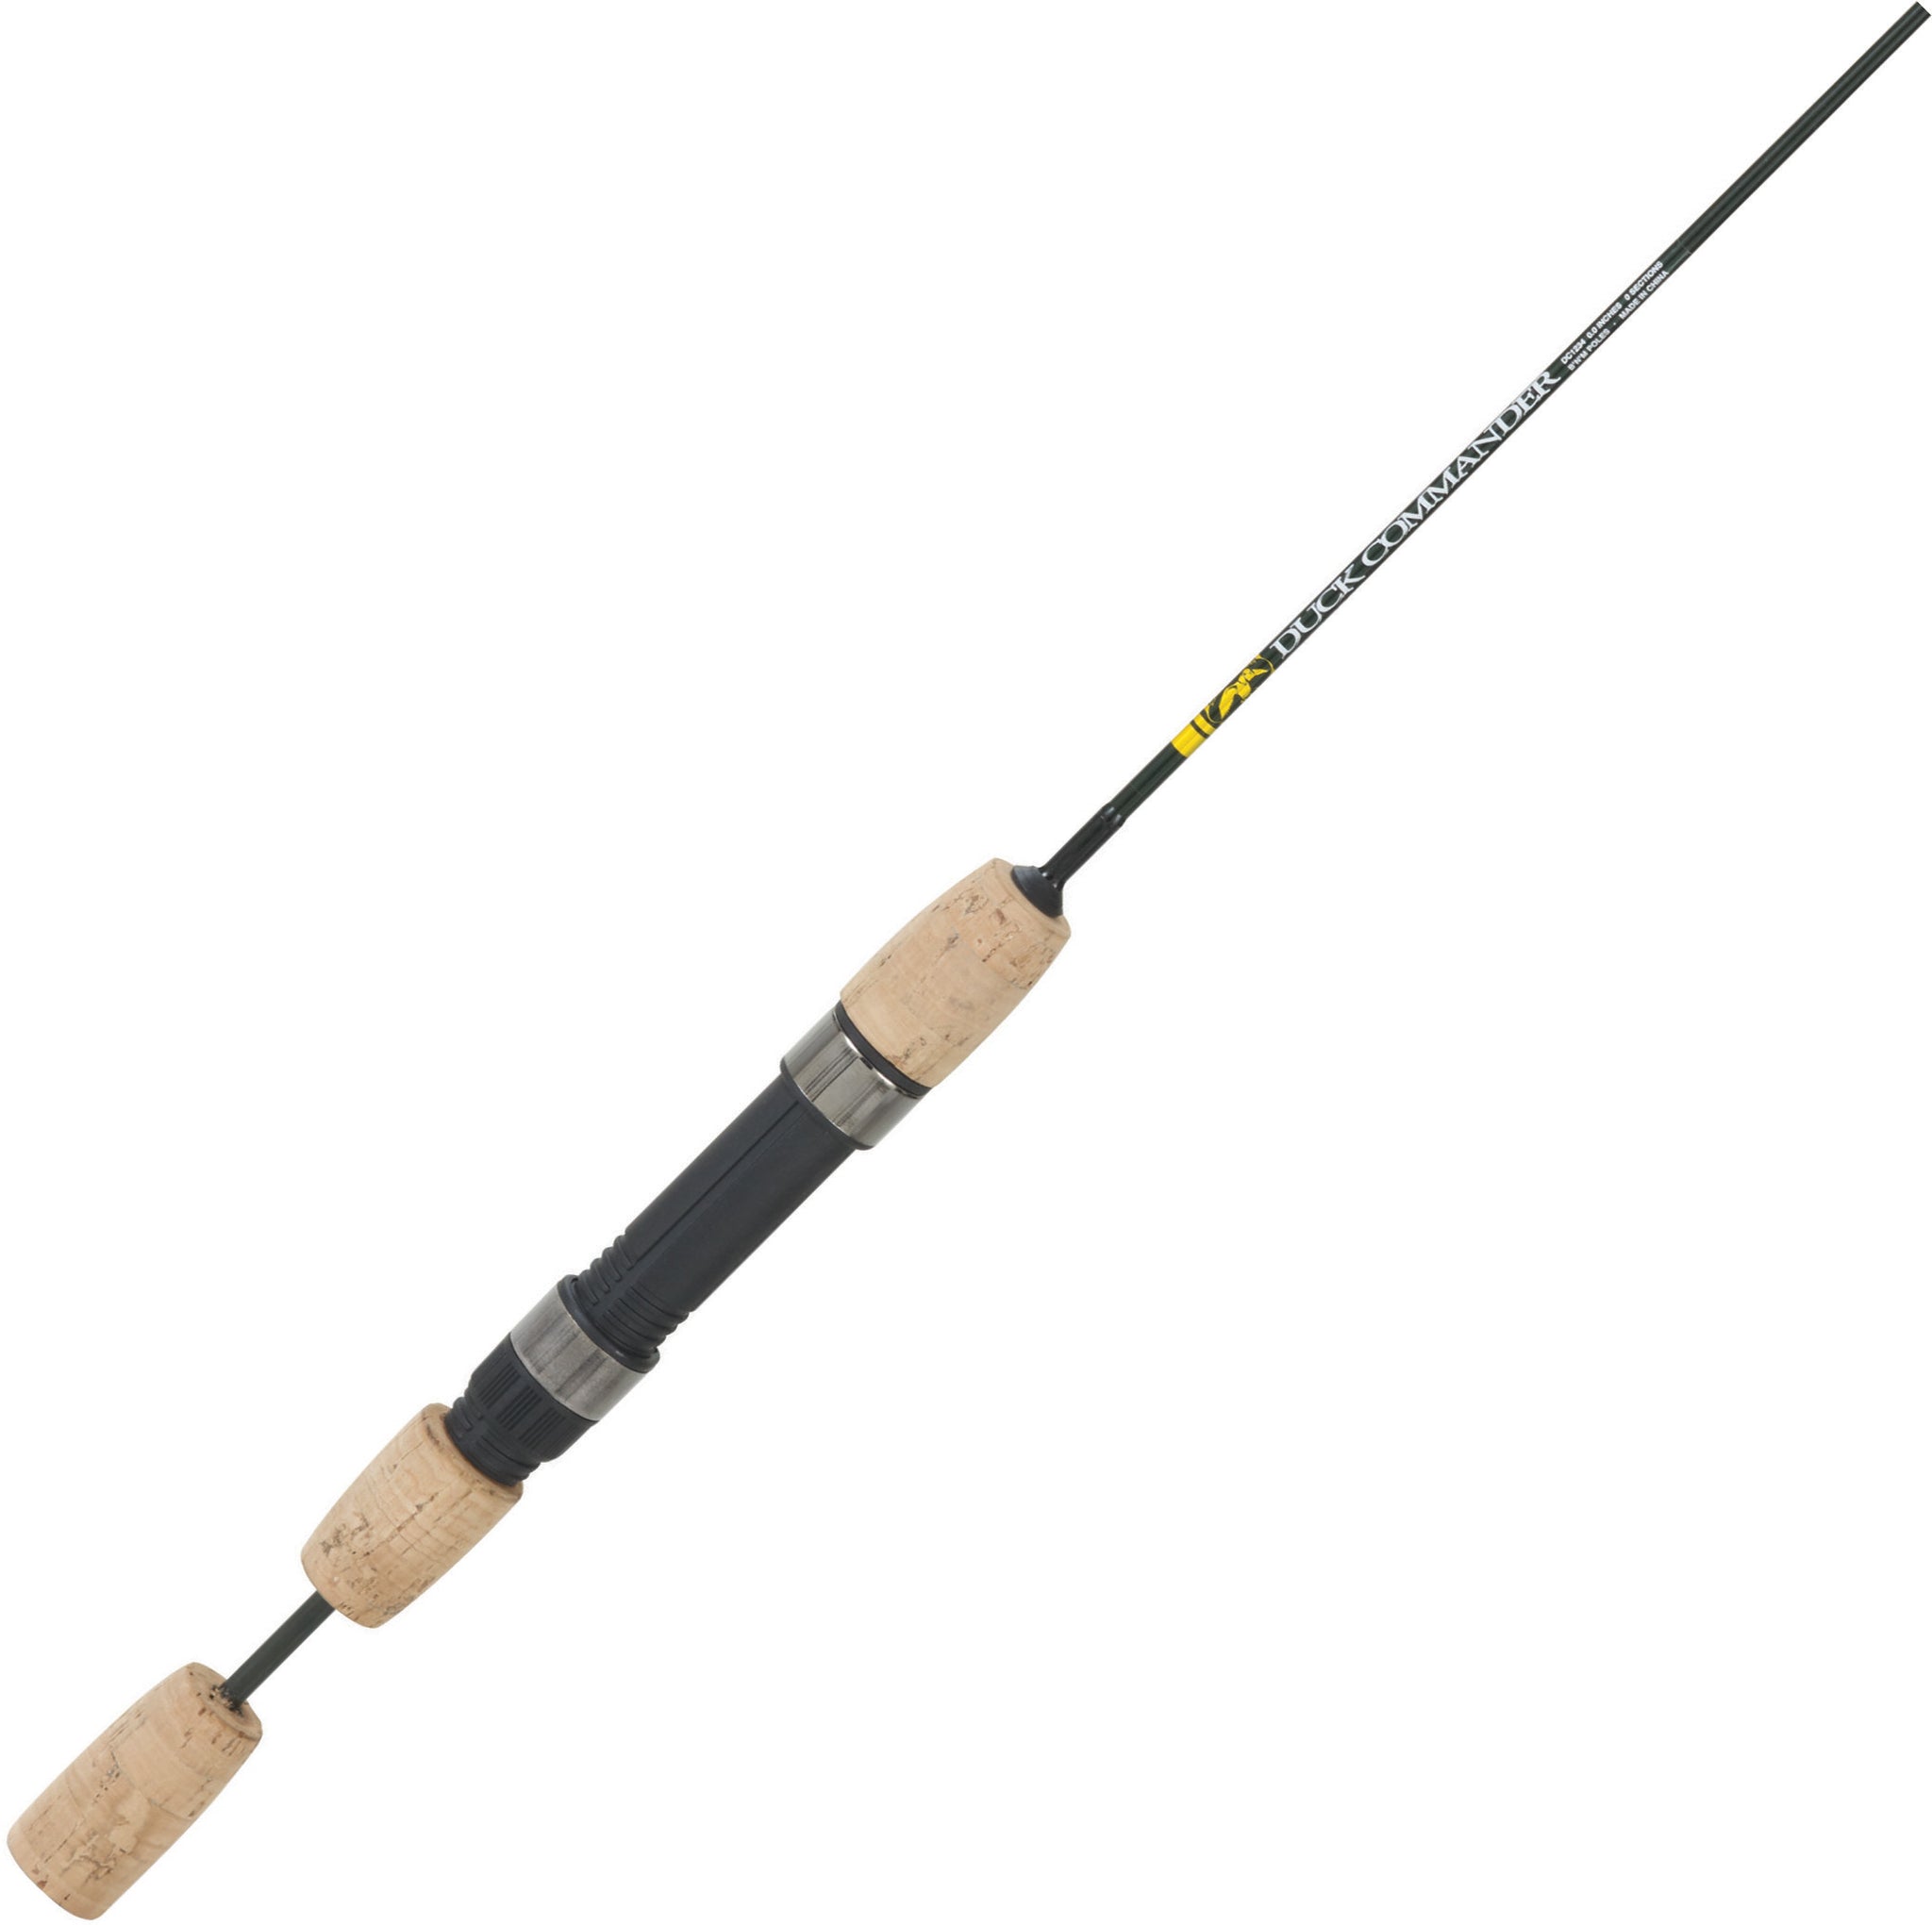 Fishing Poles - B'n'M Pole Company